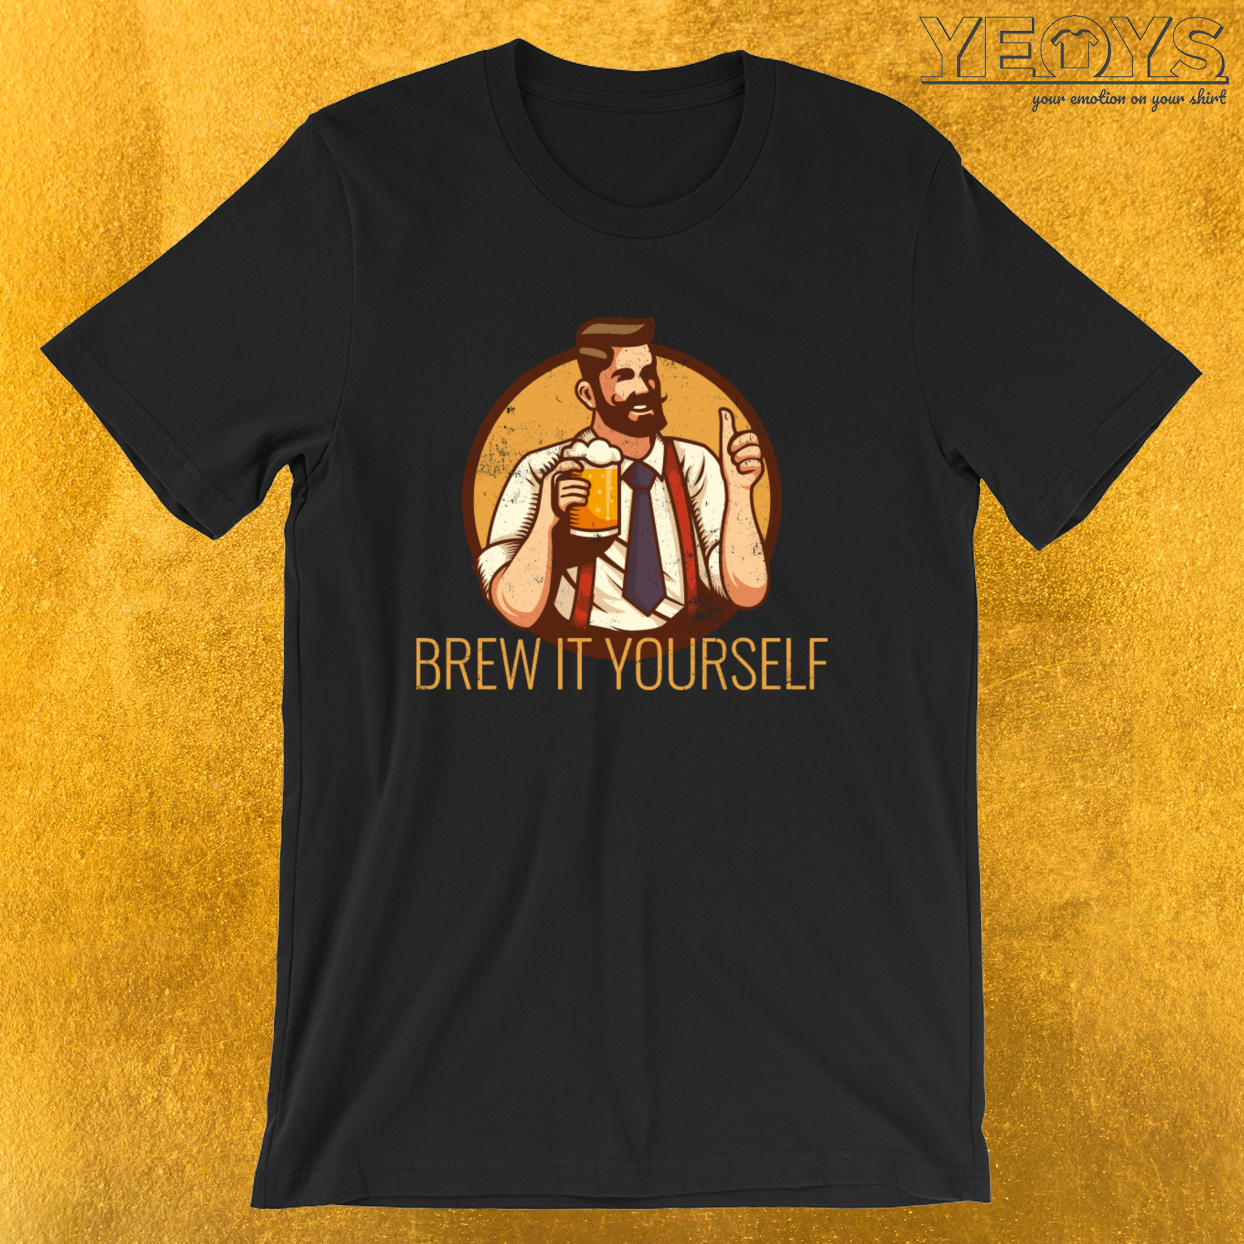 Brew It Yourself – Craft Beer Tee